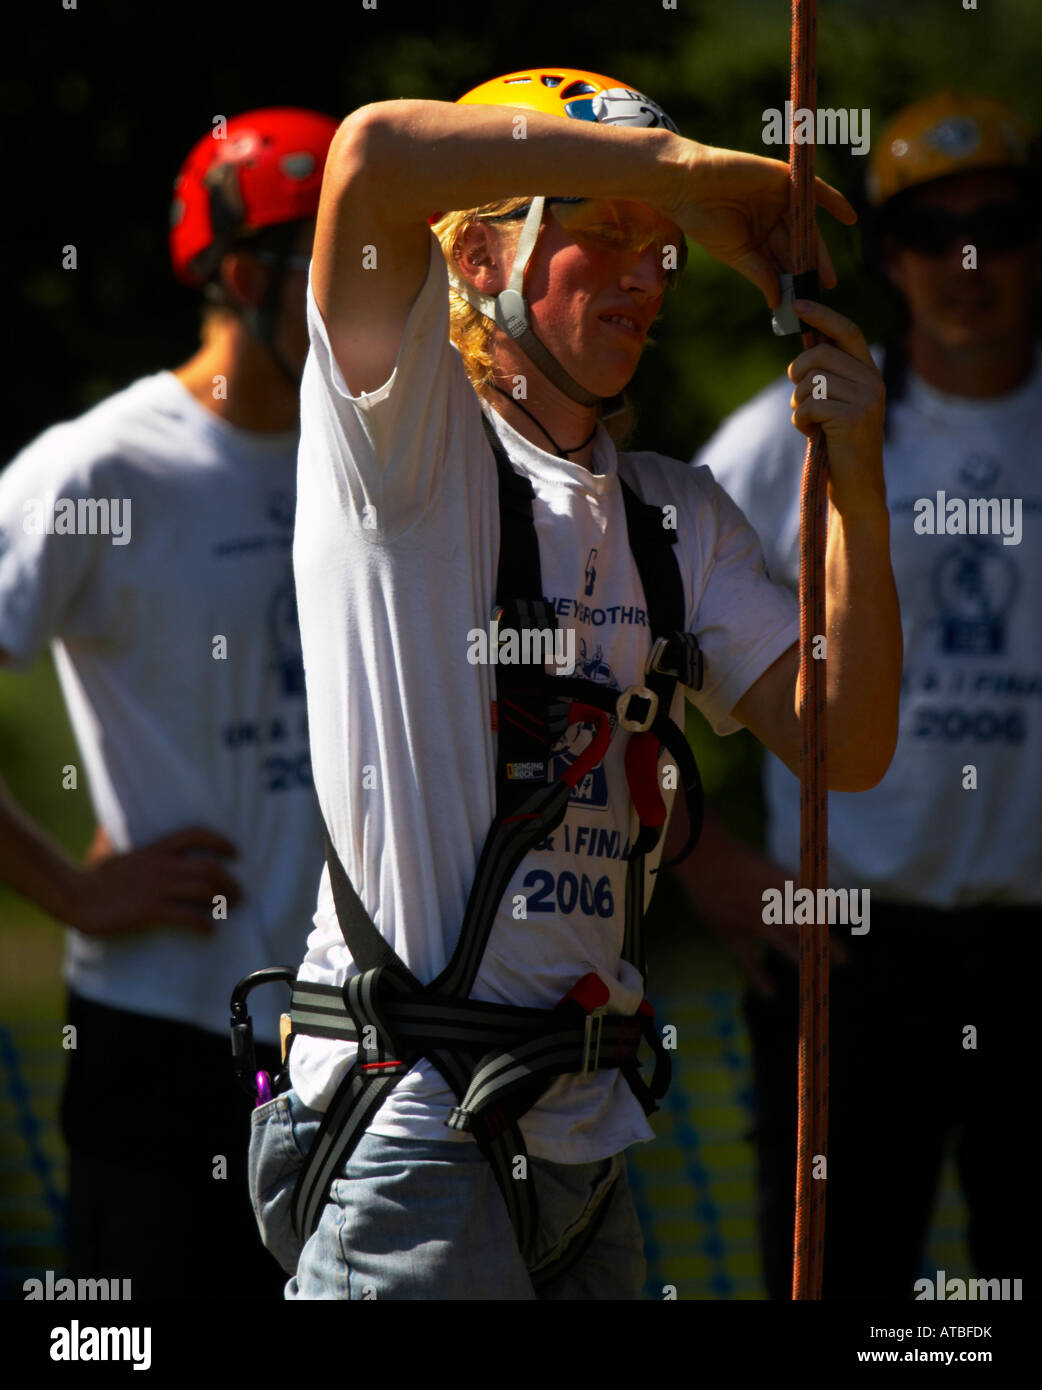 Albero maschio concorrente di arrampicata Foto Stock